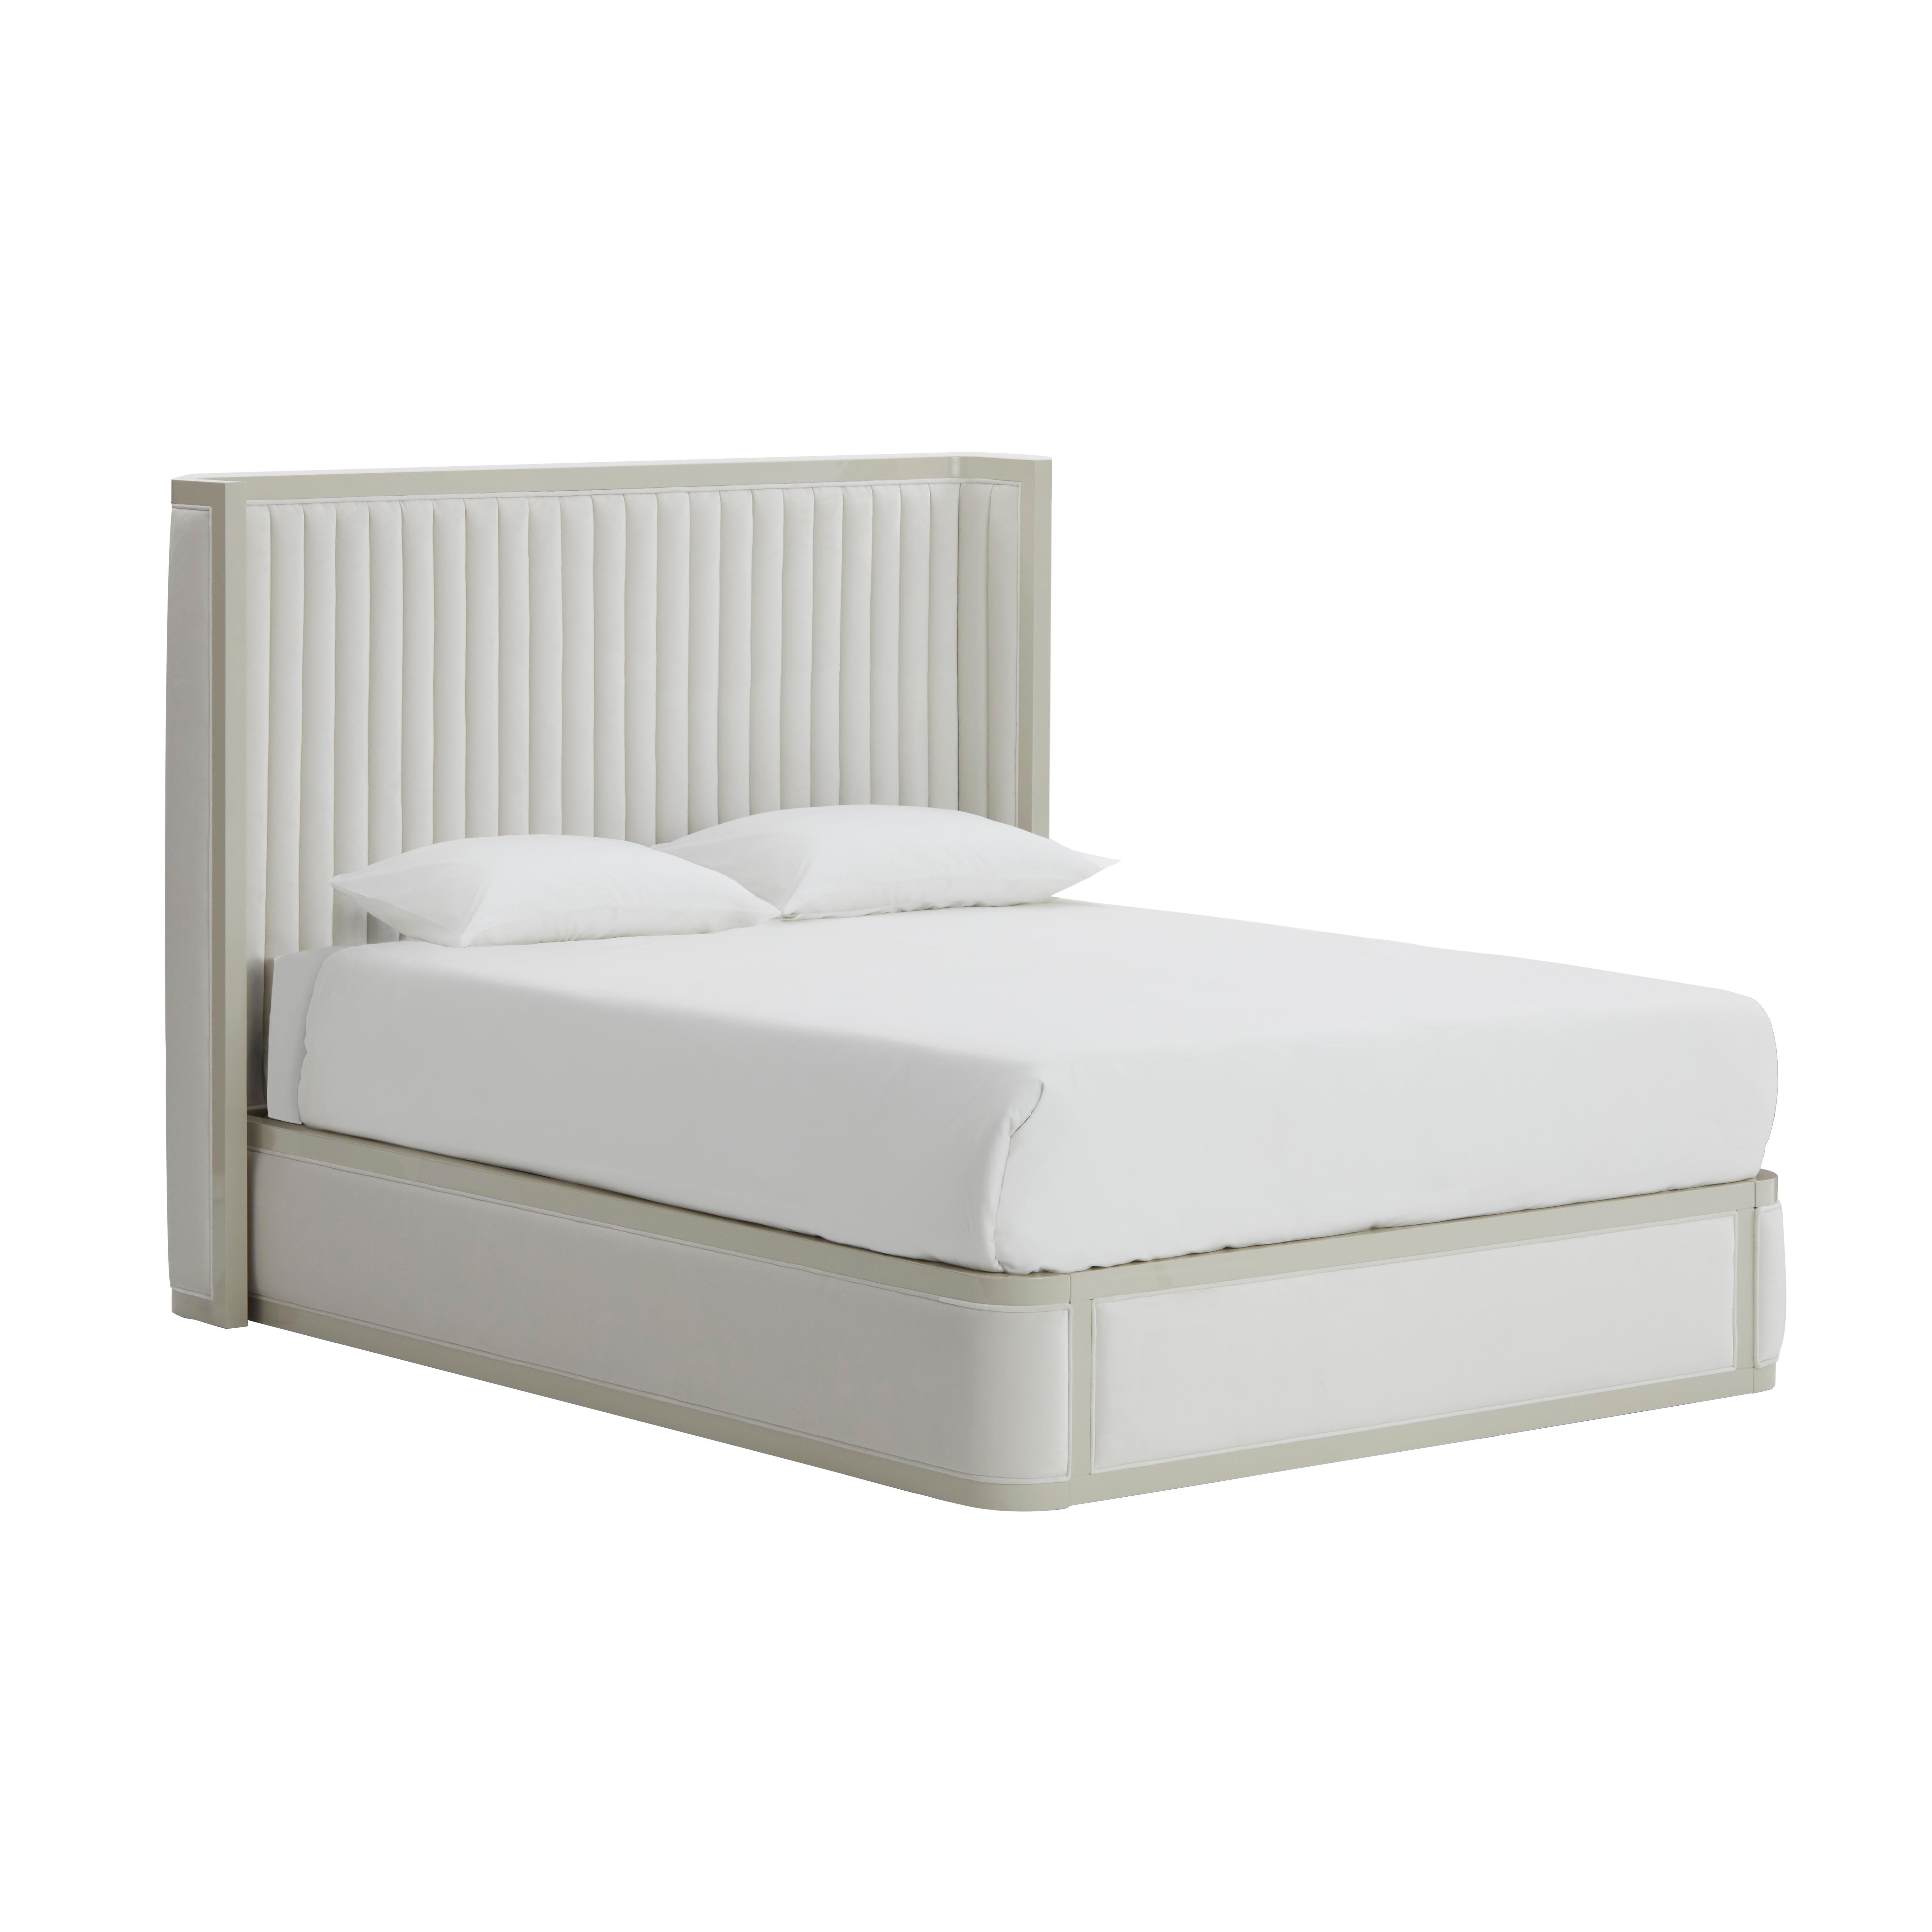 AGATHA ist ein Bett mit einem hohen und gepolsterten Kopfteil, das eine lackierte Struktur mit einem zarten Steppstoff am Kopfteil kombiniert. Dieses sehr attraktive Bett ist für jedes Schlafzimmer geeignet. Erhältlich in drei Größen, ist es